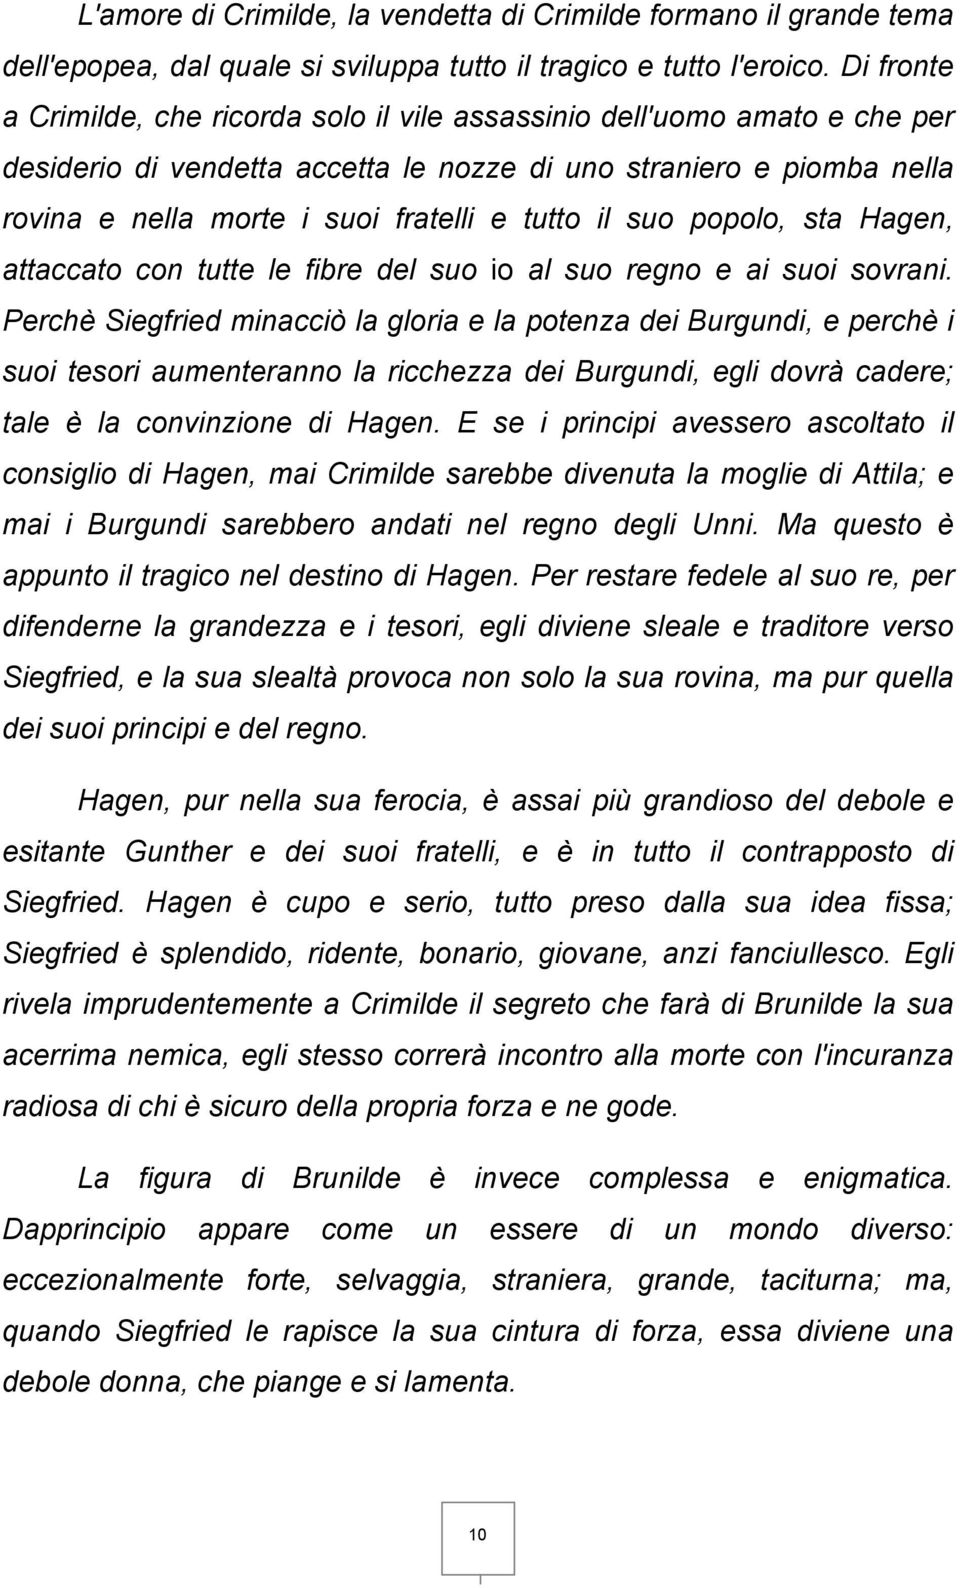 La Canzone Dei Nibelunghi A Cura Di Silvia Masaracchio Bacheca Ebook Pdf Download Gratuito